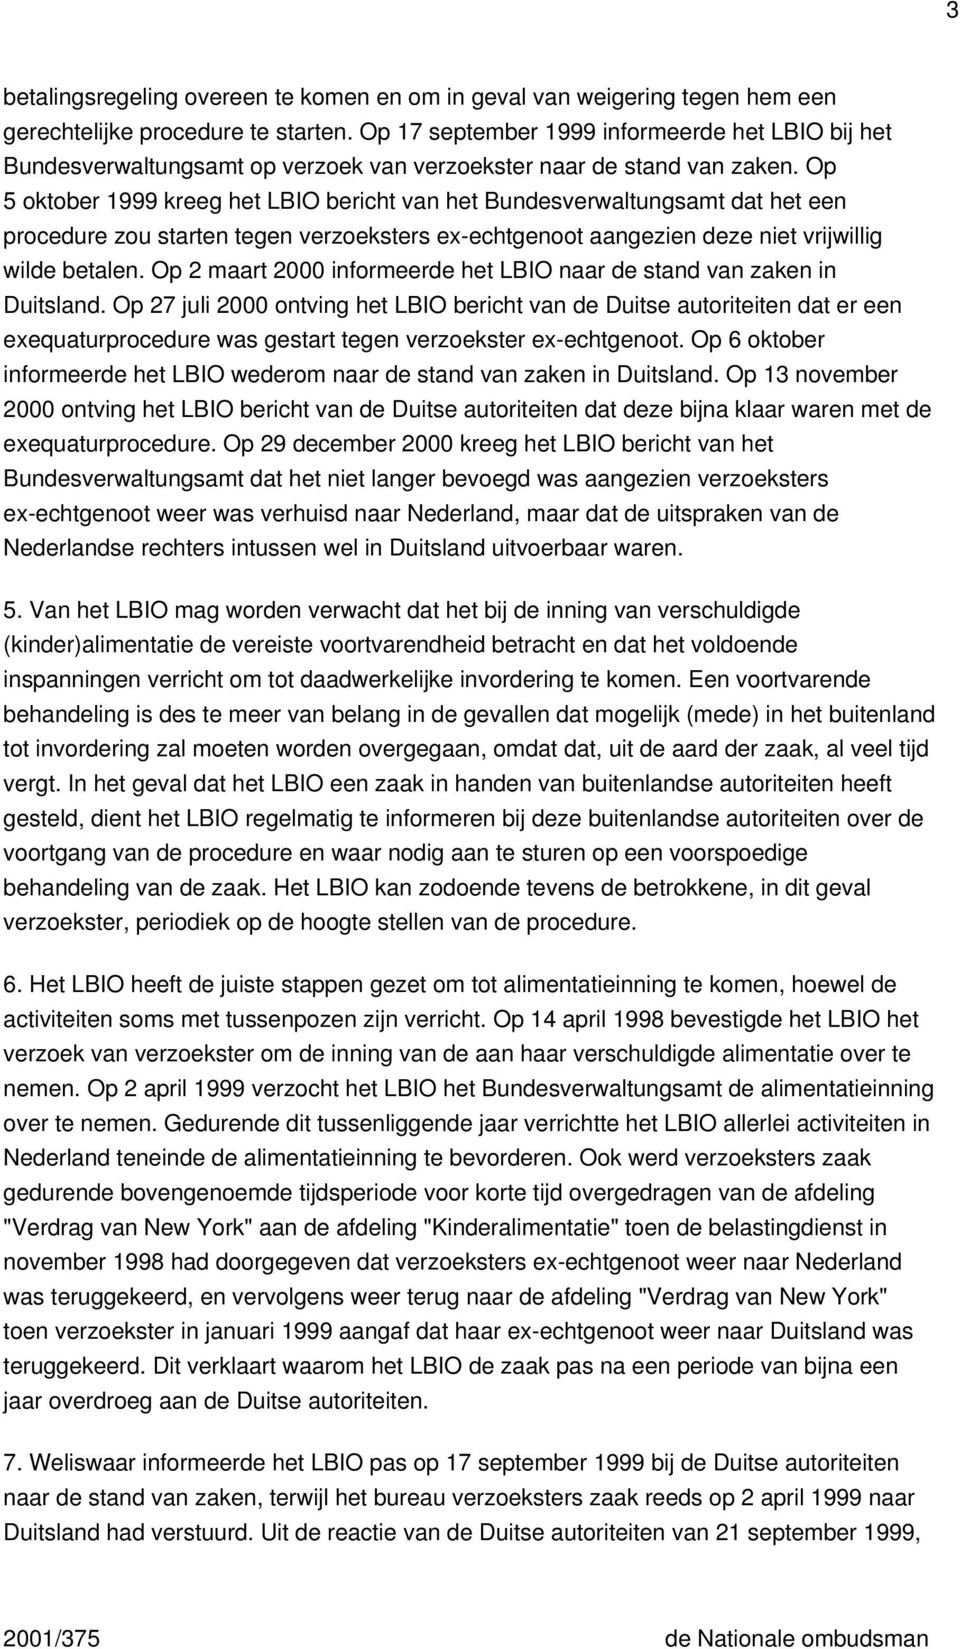 Op 5 oktober 1999 kreeg het LBIO bericht van het Bundesverwaltungsamt dat het een procedure zou starten tegen verzoeksters ex-echtgenoot aangezien deze niet vrijwillig wilde betalen.